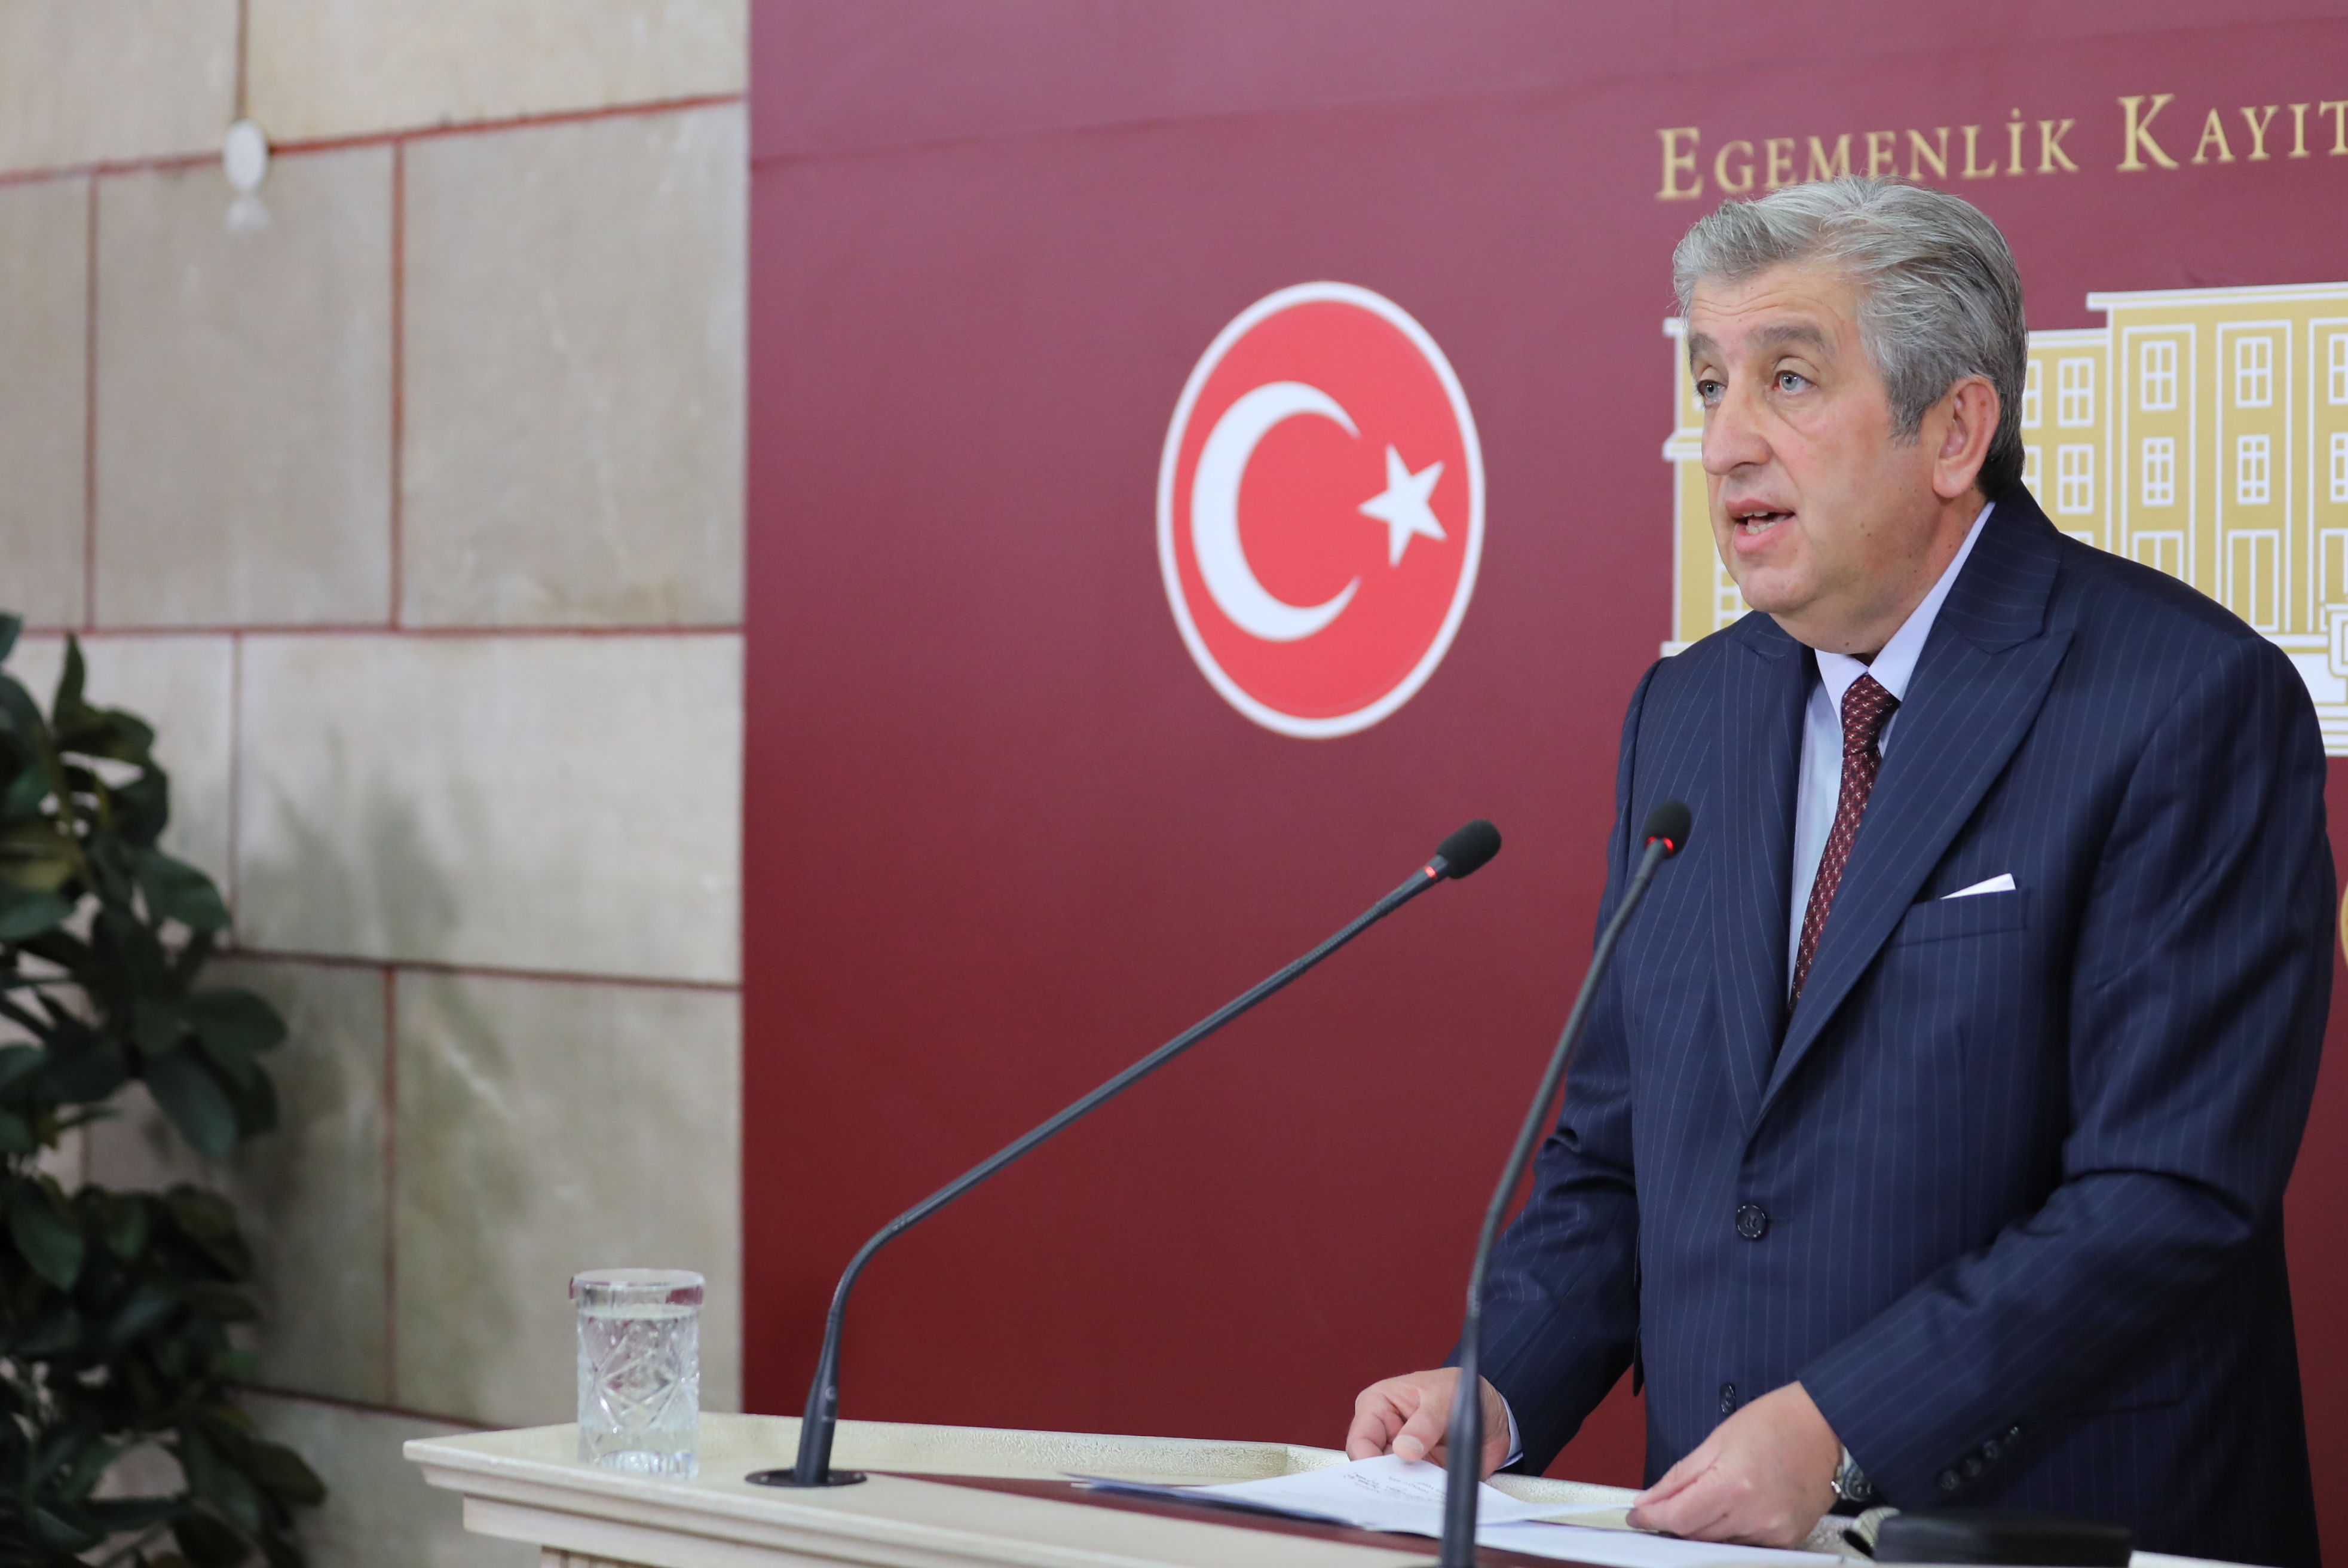 Murat Çan, Büyükşehir Belediyesi'nin 11 milyar TL'lik borcunu TBMM'ye taşıdı.